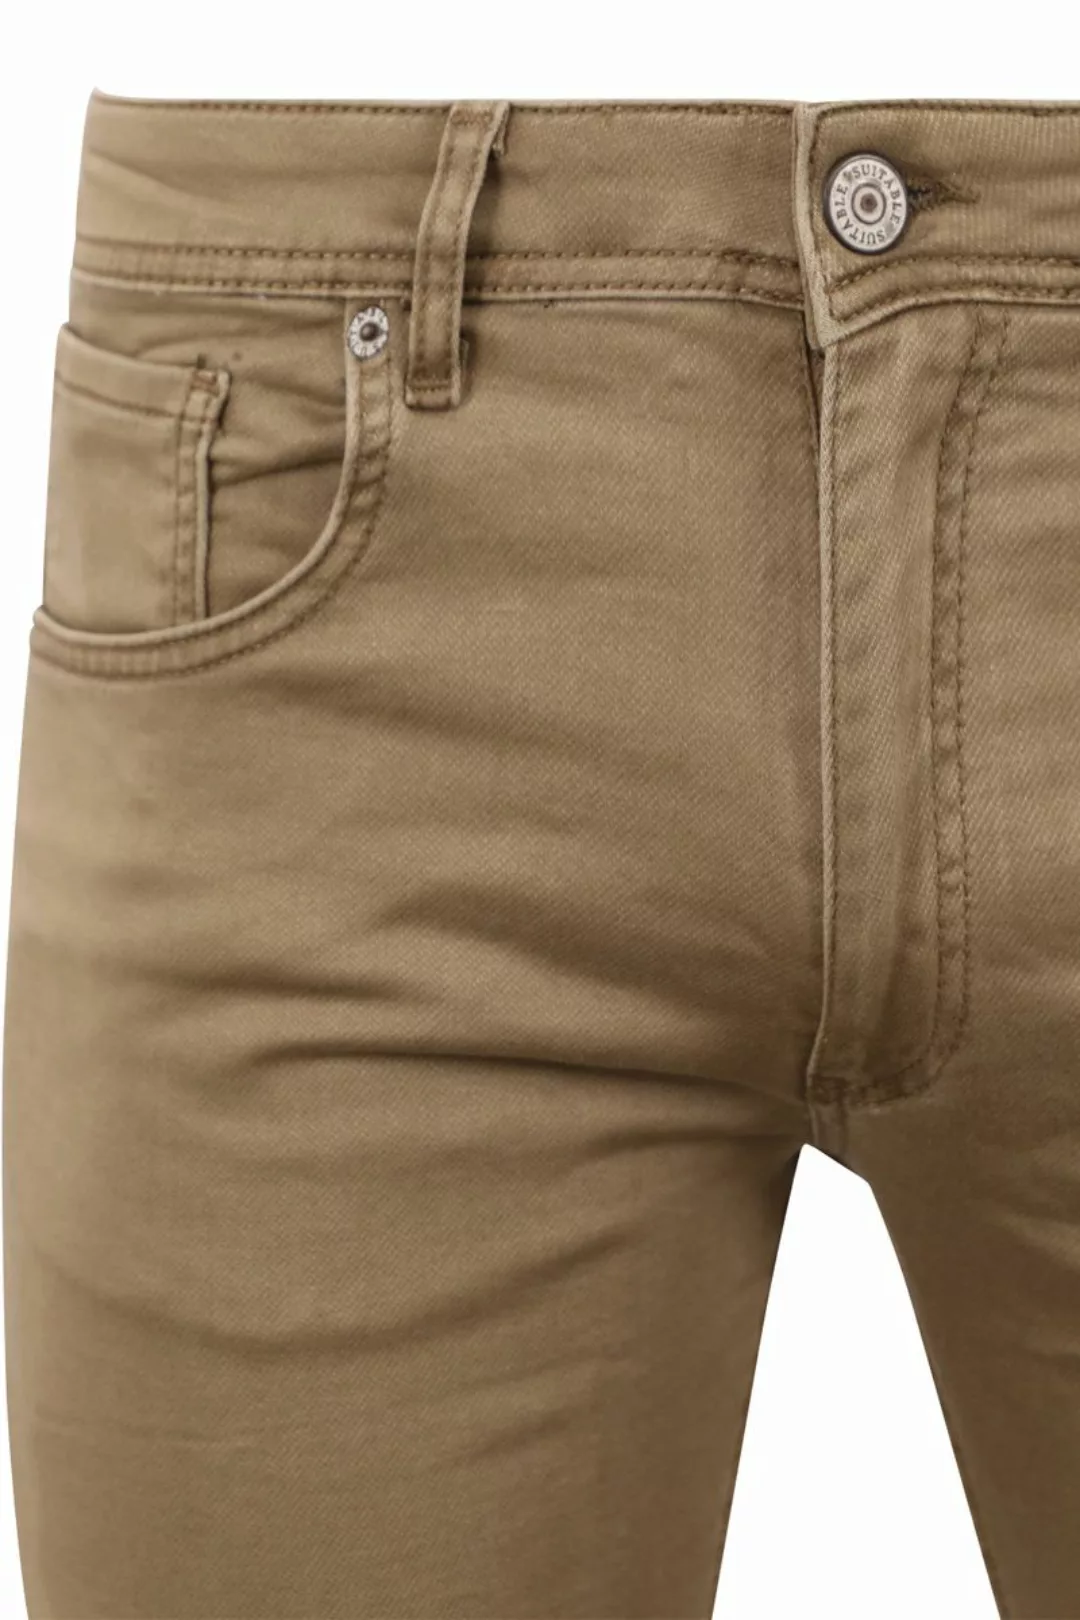 Suitable Kant Jeans Khaki - Größe W 34 - L 32 günstig online kaufen